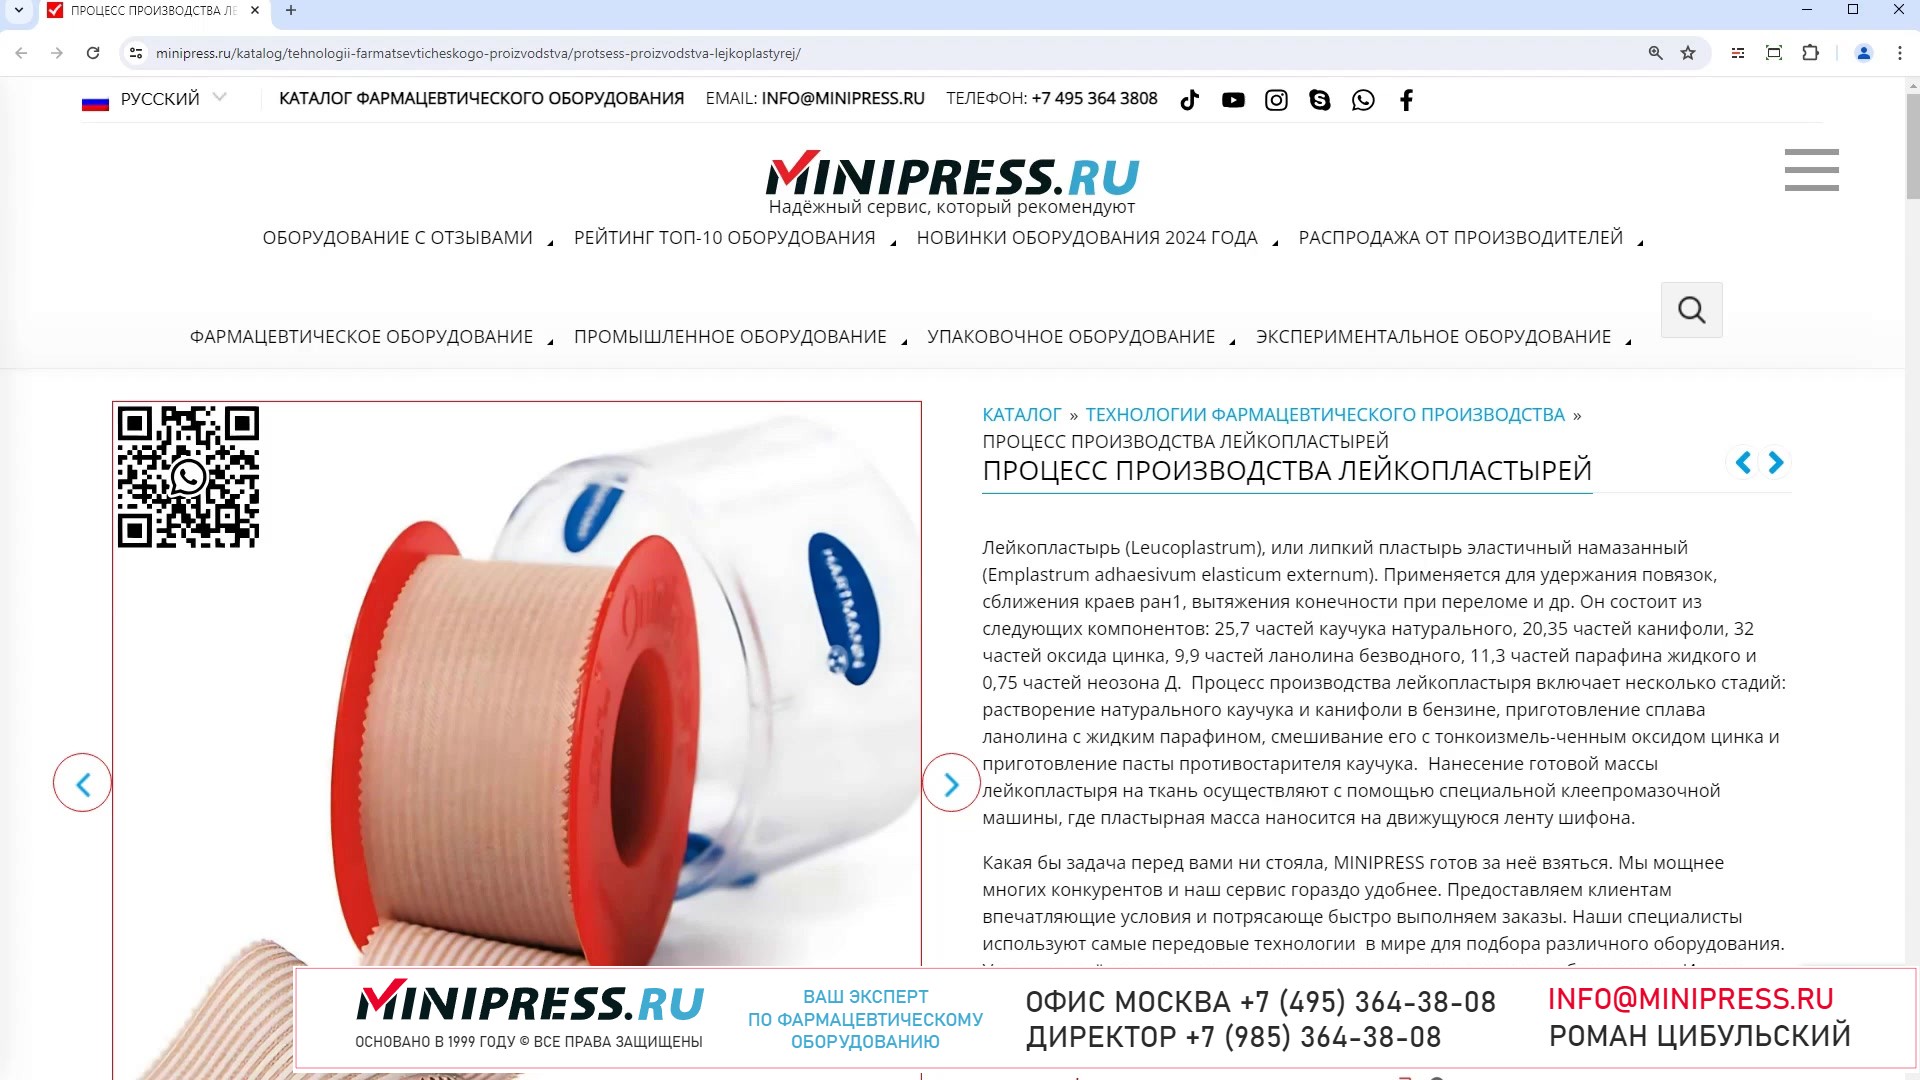 Minipress.ru Процесс производства лейкопластырей